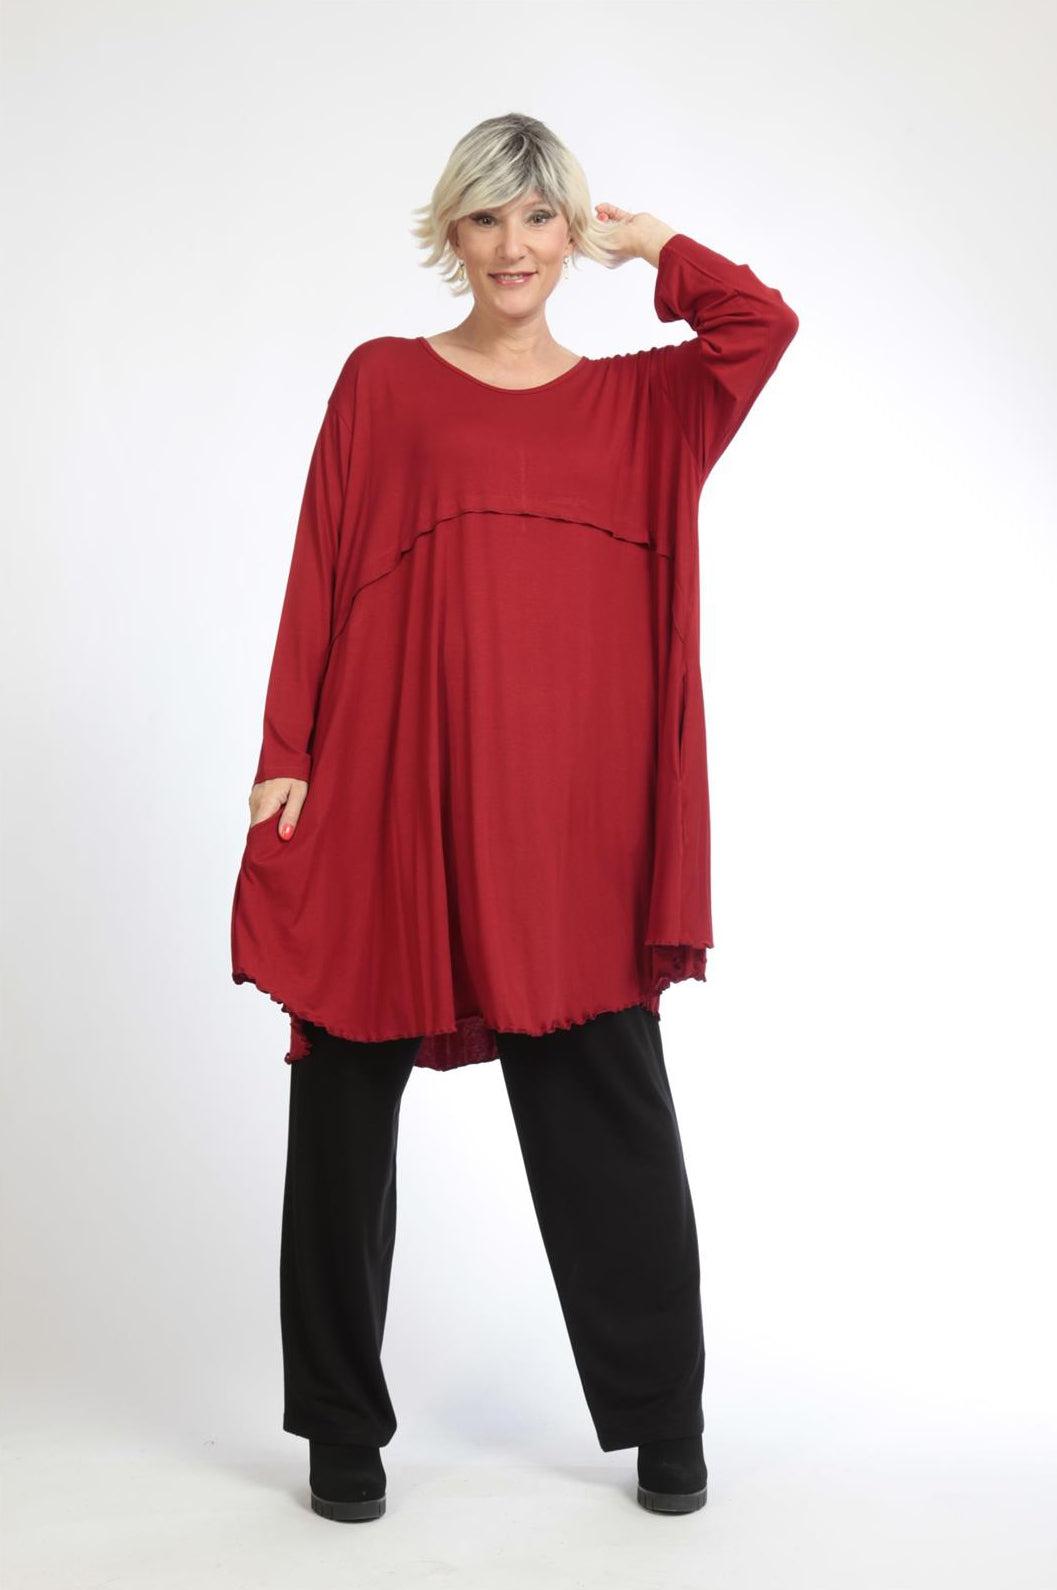 Alltags Big Shirt in A-Form aus feiner Jersey Qualität, Rot Lagenlook Oversize Mode B2B Großhandel